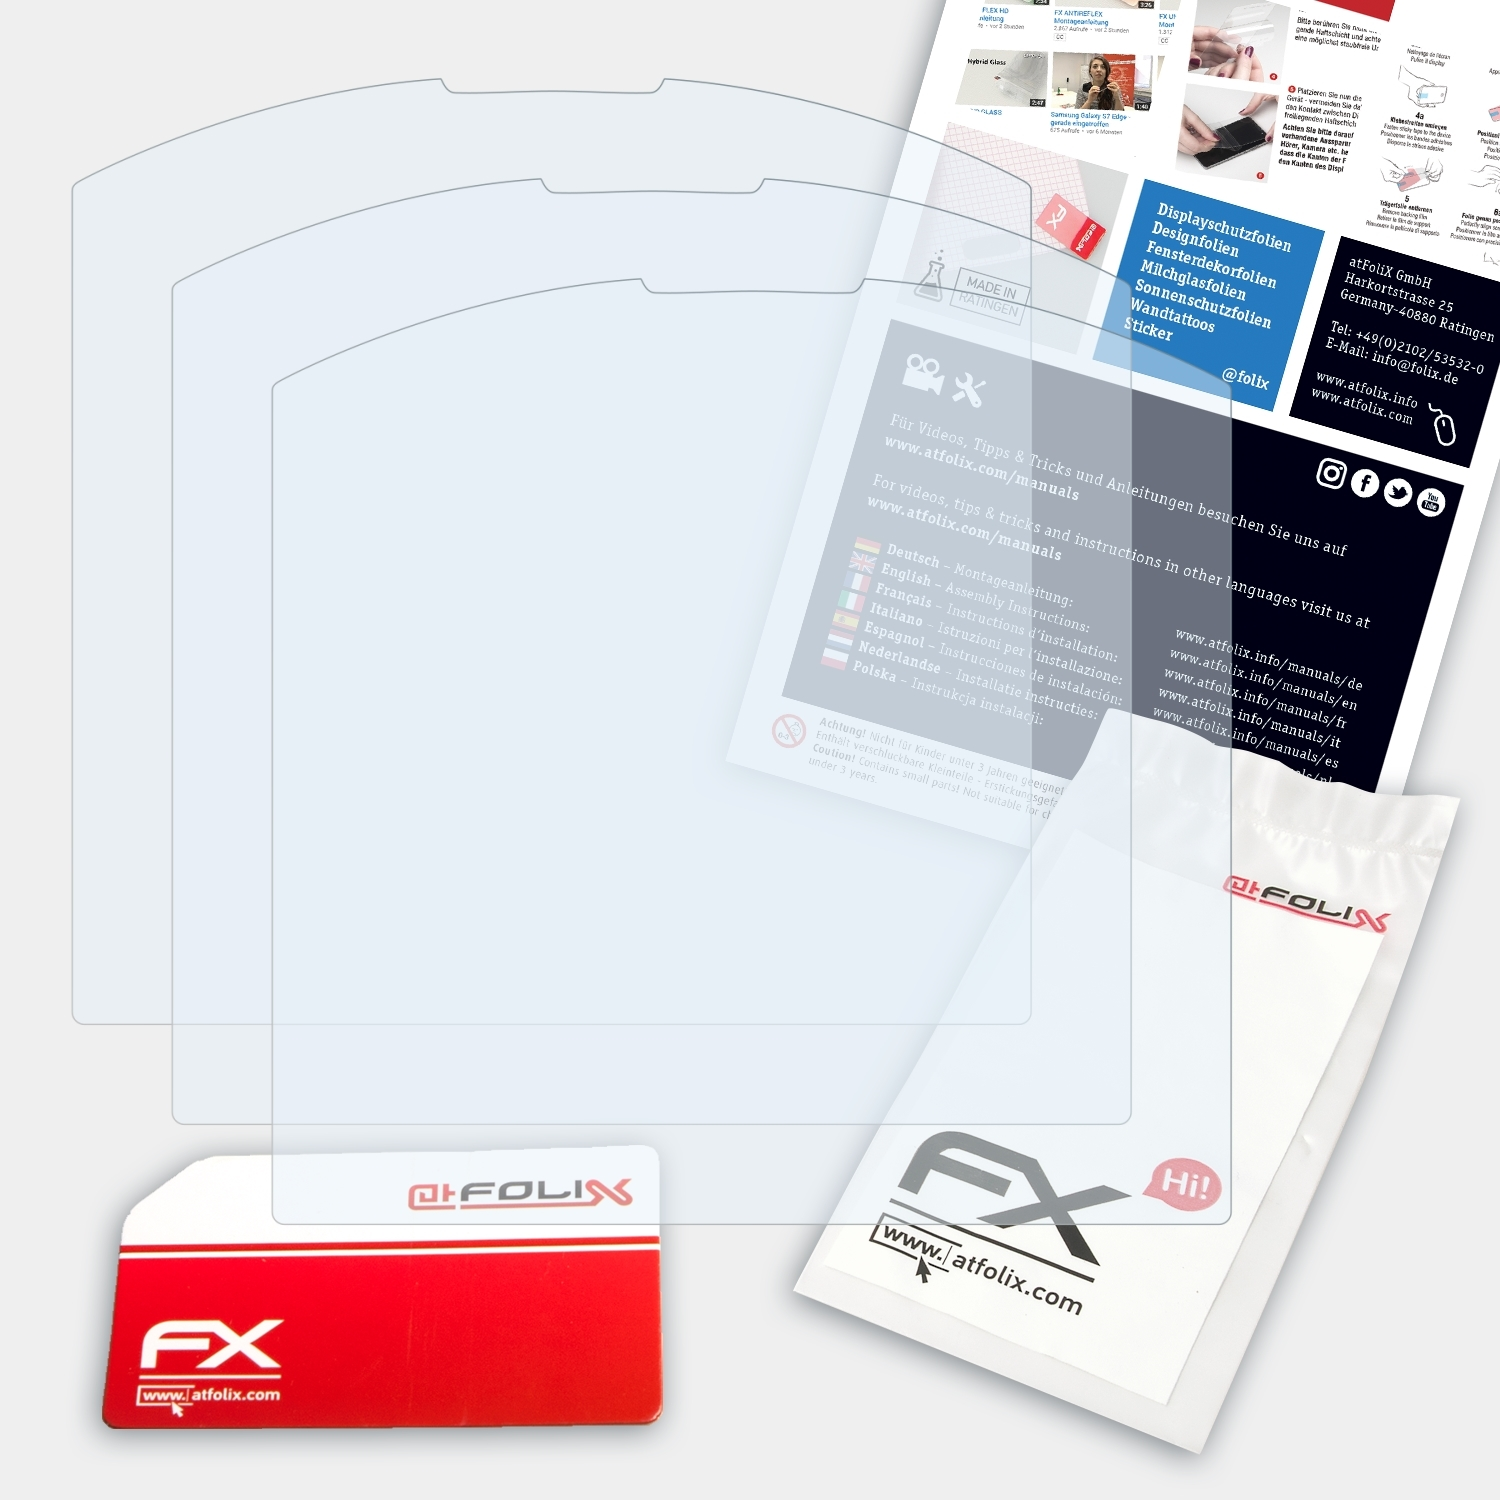 Pure) 3x Displayschutz(für FX-Clear Emporia ATFOLIX